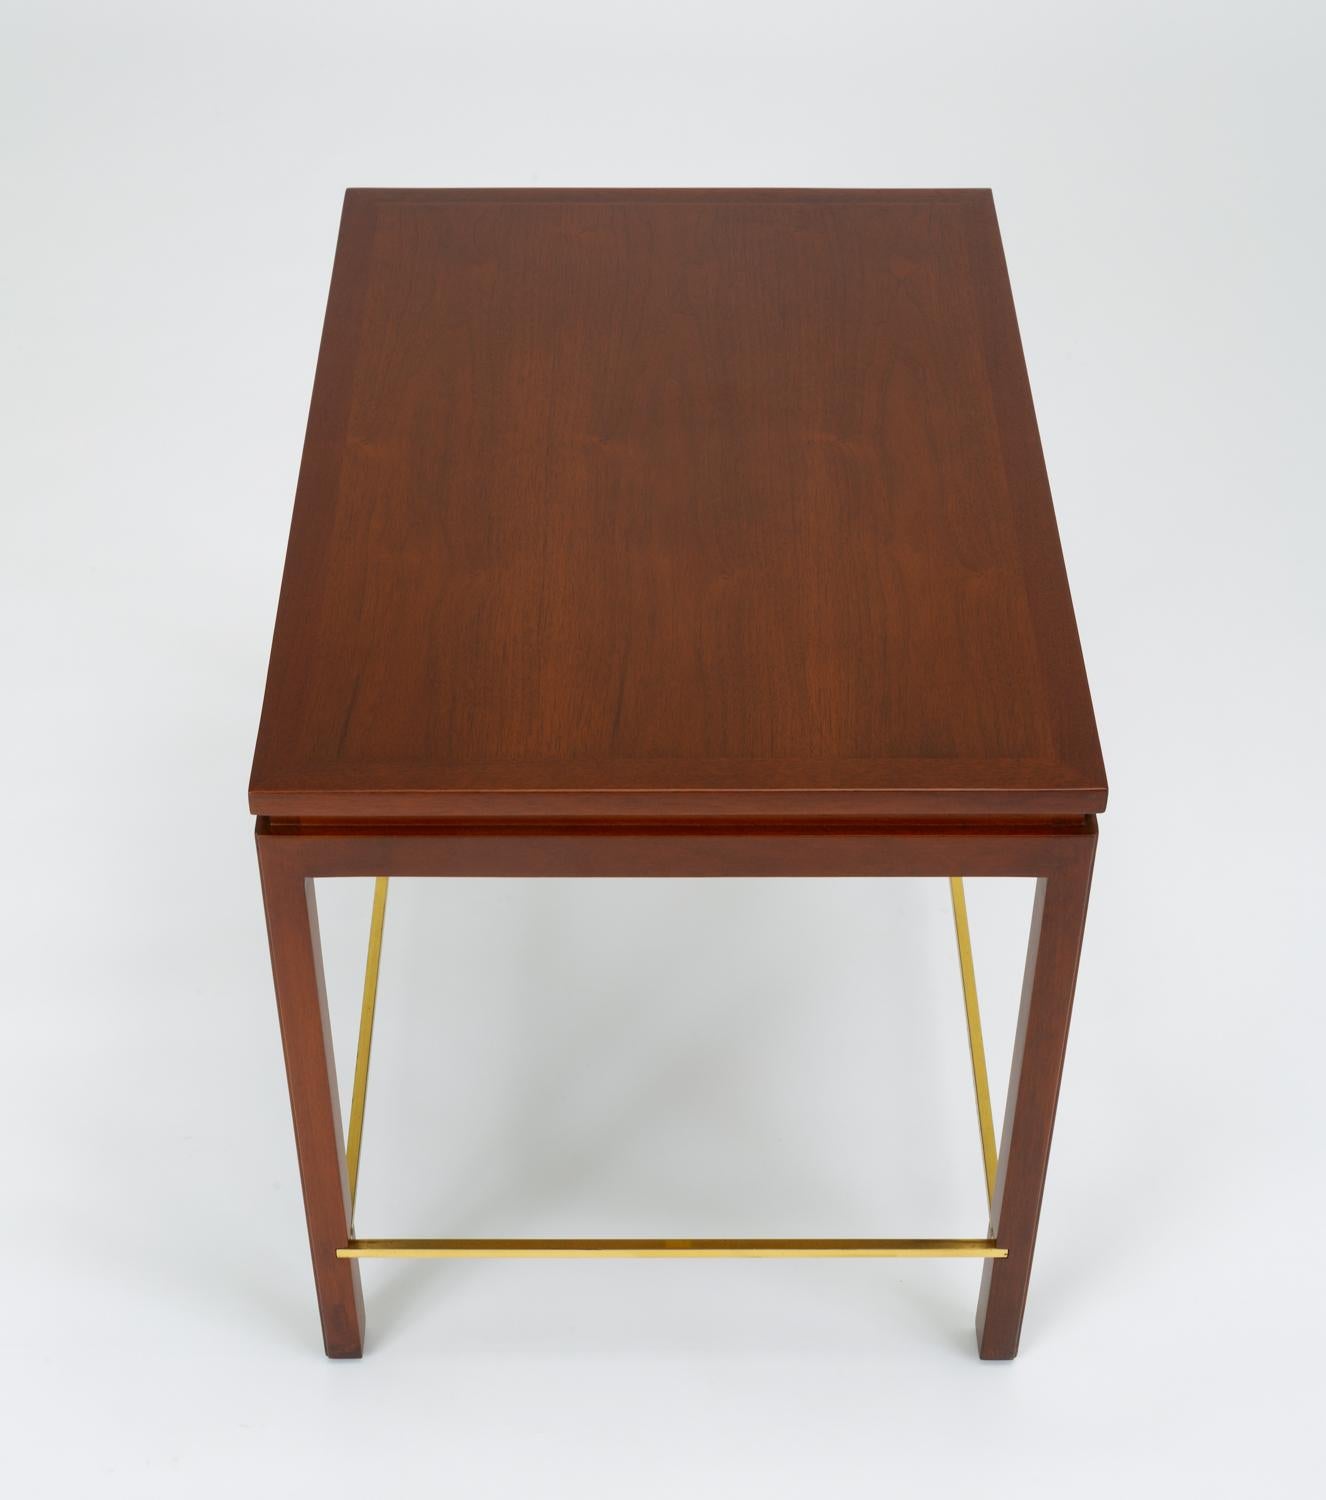 Dunbar Model 310 Side Table by Edward Wormley 1